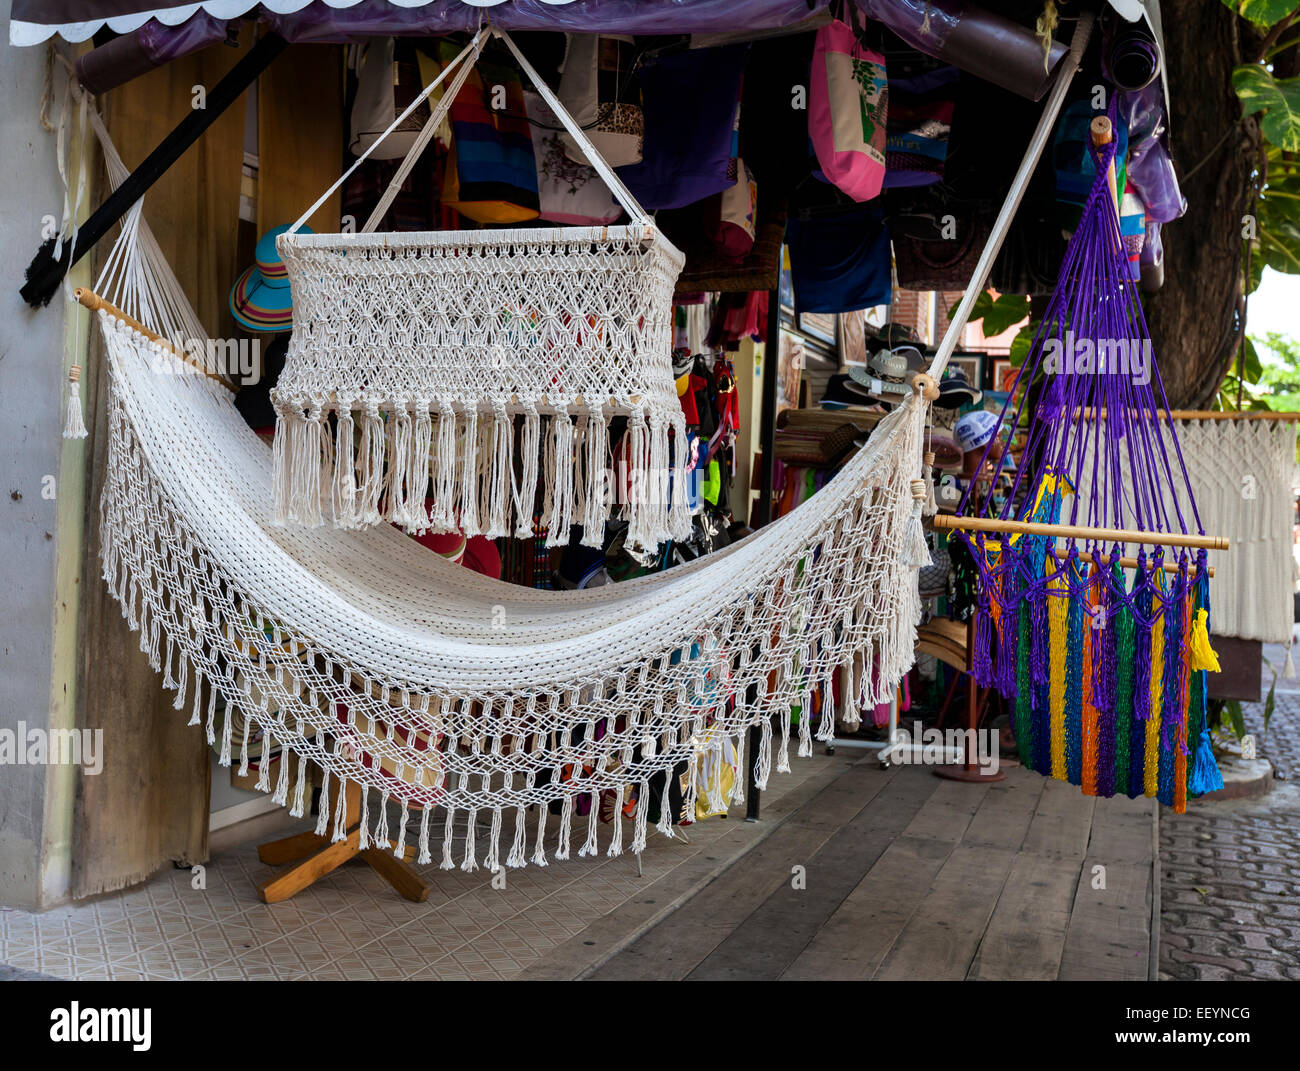 Hammock, Baby Crib, for Sale in a Souvenir Shop.  Playa del Carmen, Riviera Maya,  Yucatan, Mexico. Stock Photo